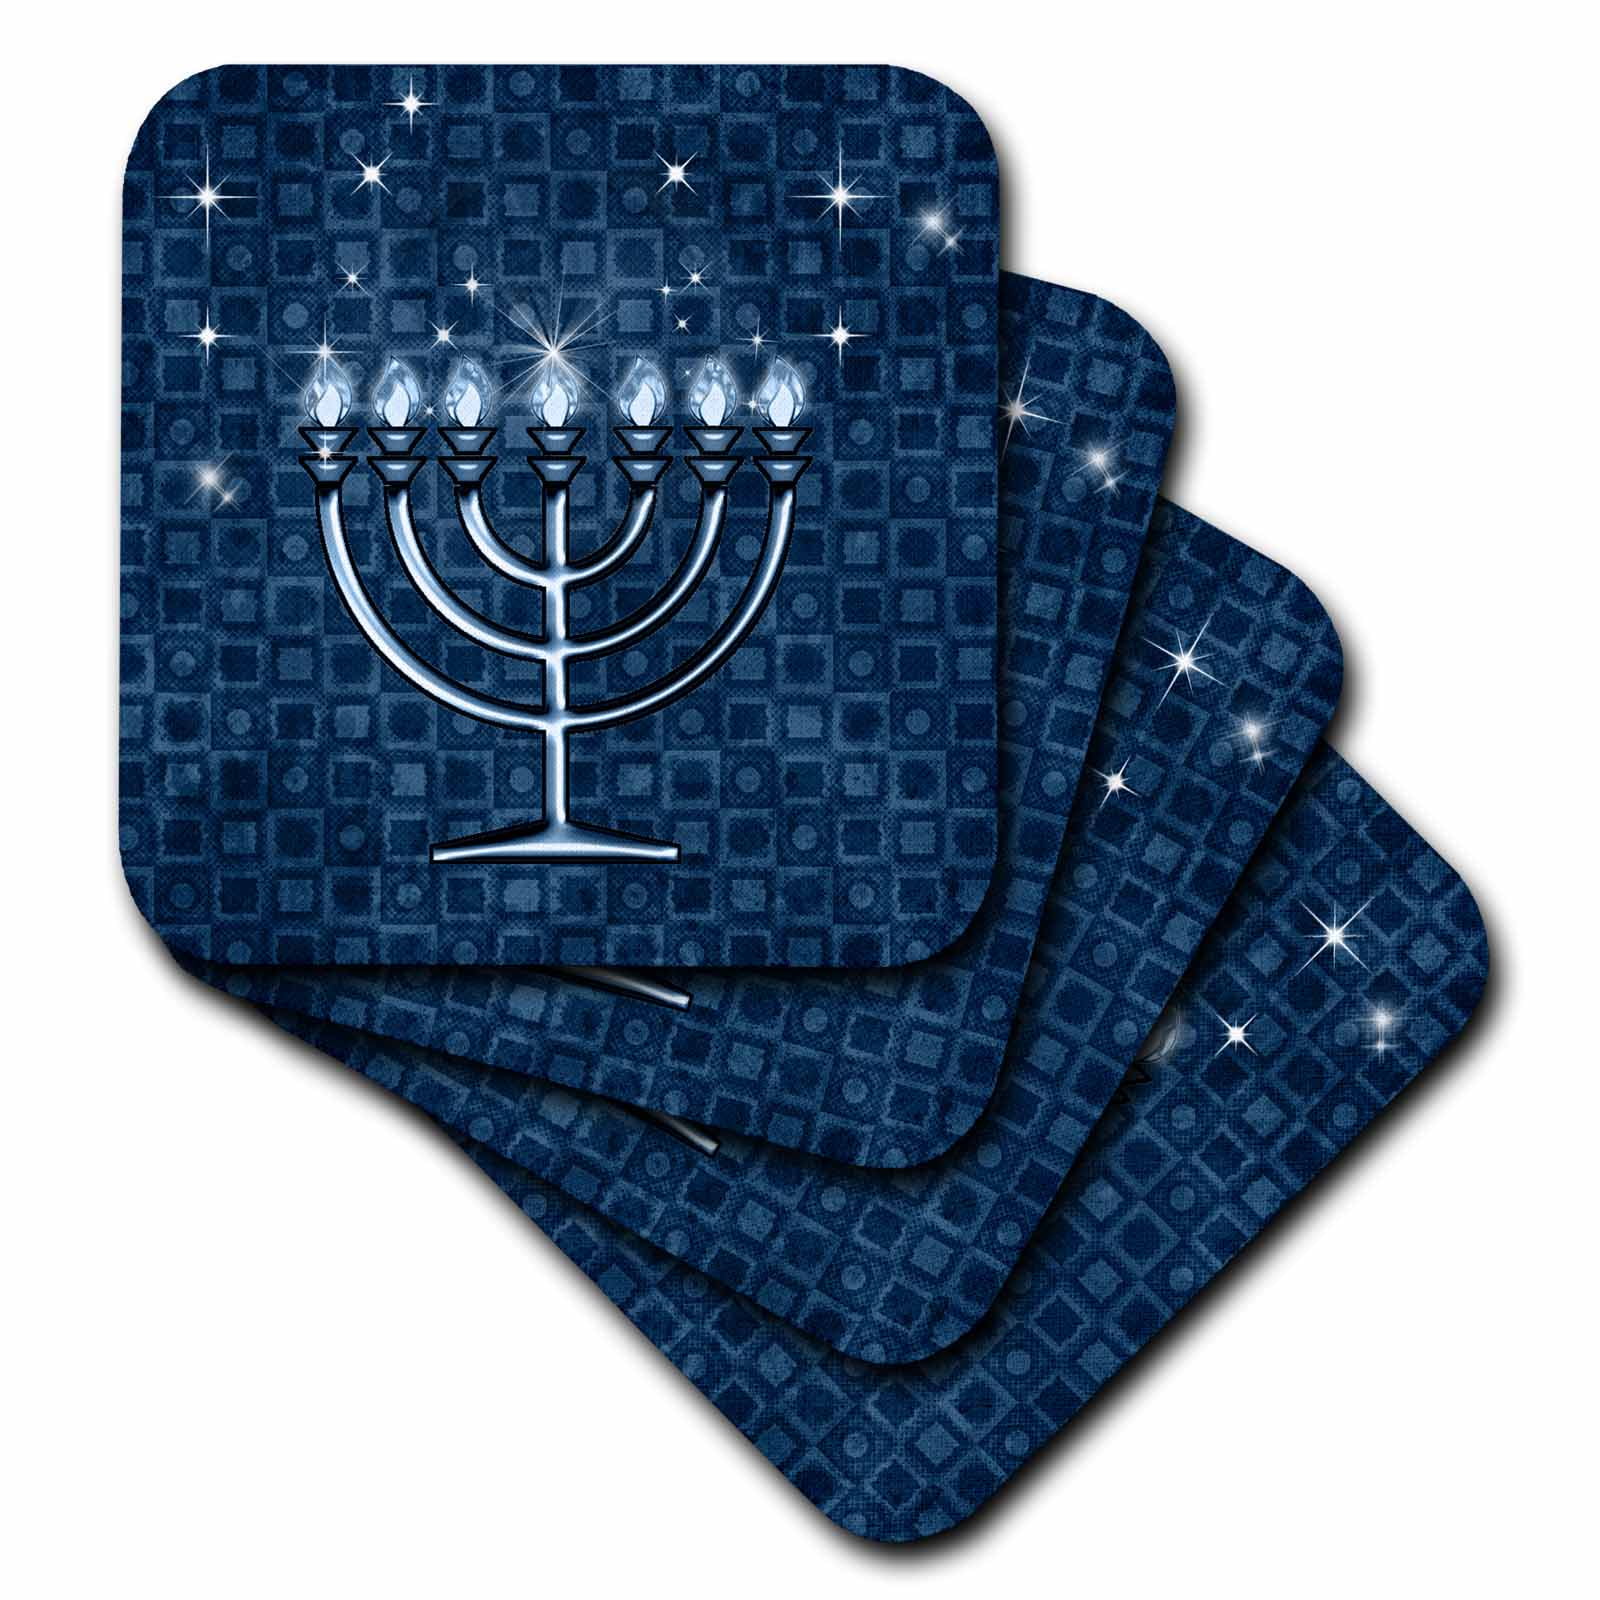 3dRose Hanukkah Menorah Blue Soft Coasters, set of 8